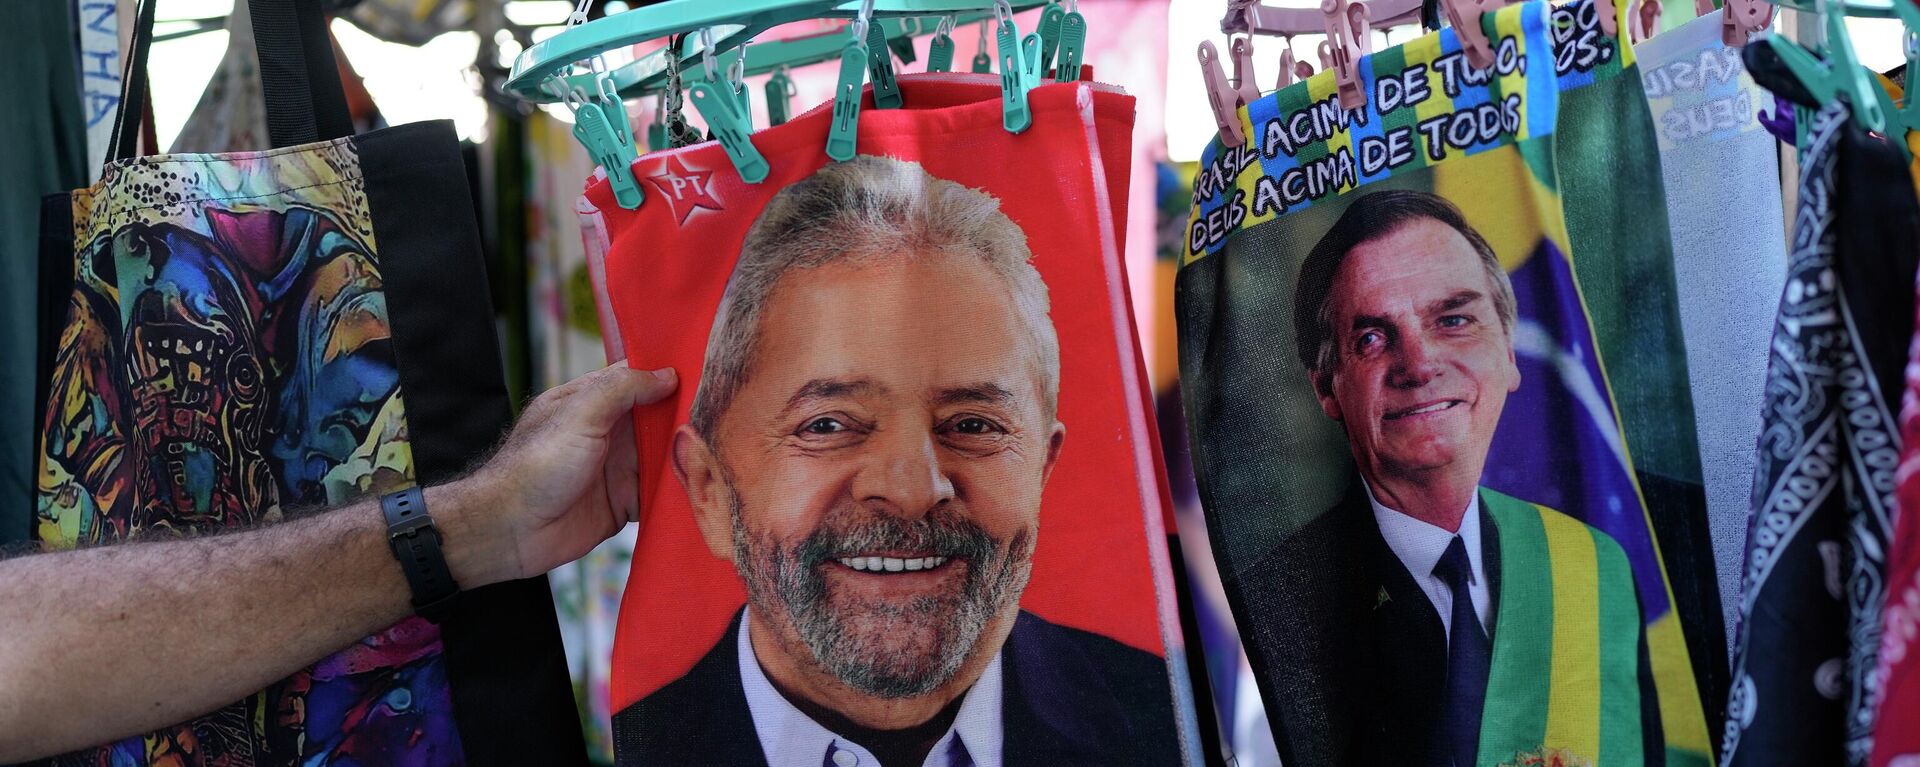 Retratos del expresidente brasileño Luiz Inácio Lula da Silva (2003-2011) y el actual mandatario, Jair Bolsonaro, en unas bolsas - Sputnik Mundo, 1920, 22.09.2022